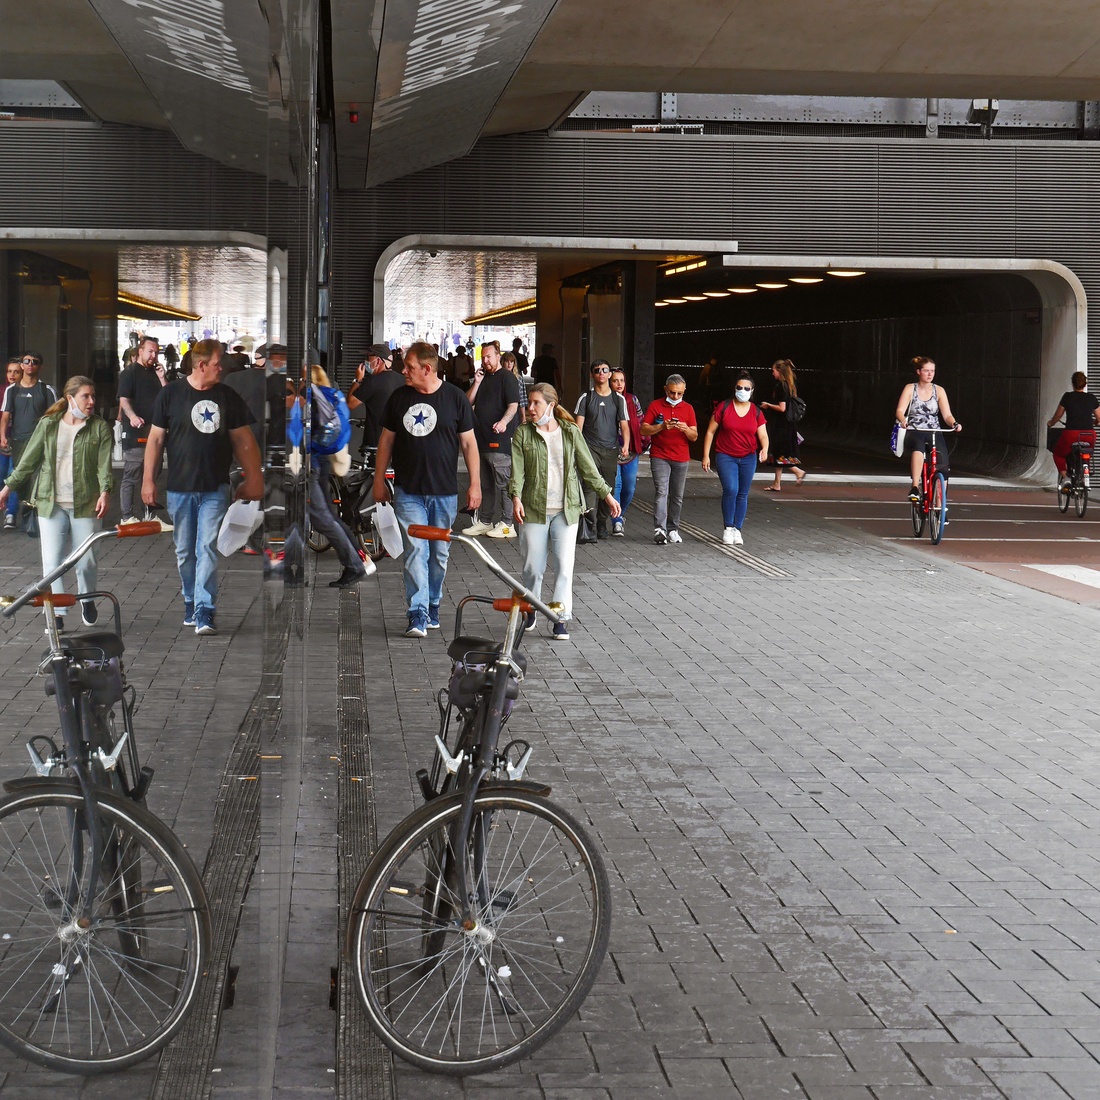 De loop- & fietstunnel aan de westkant van het C.S. Amsterdam; keramisch tegeltje, nr. fh0002